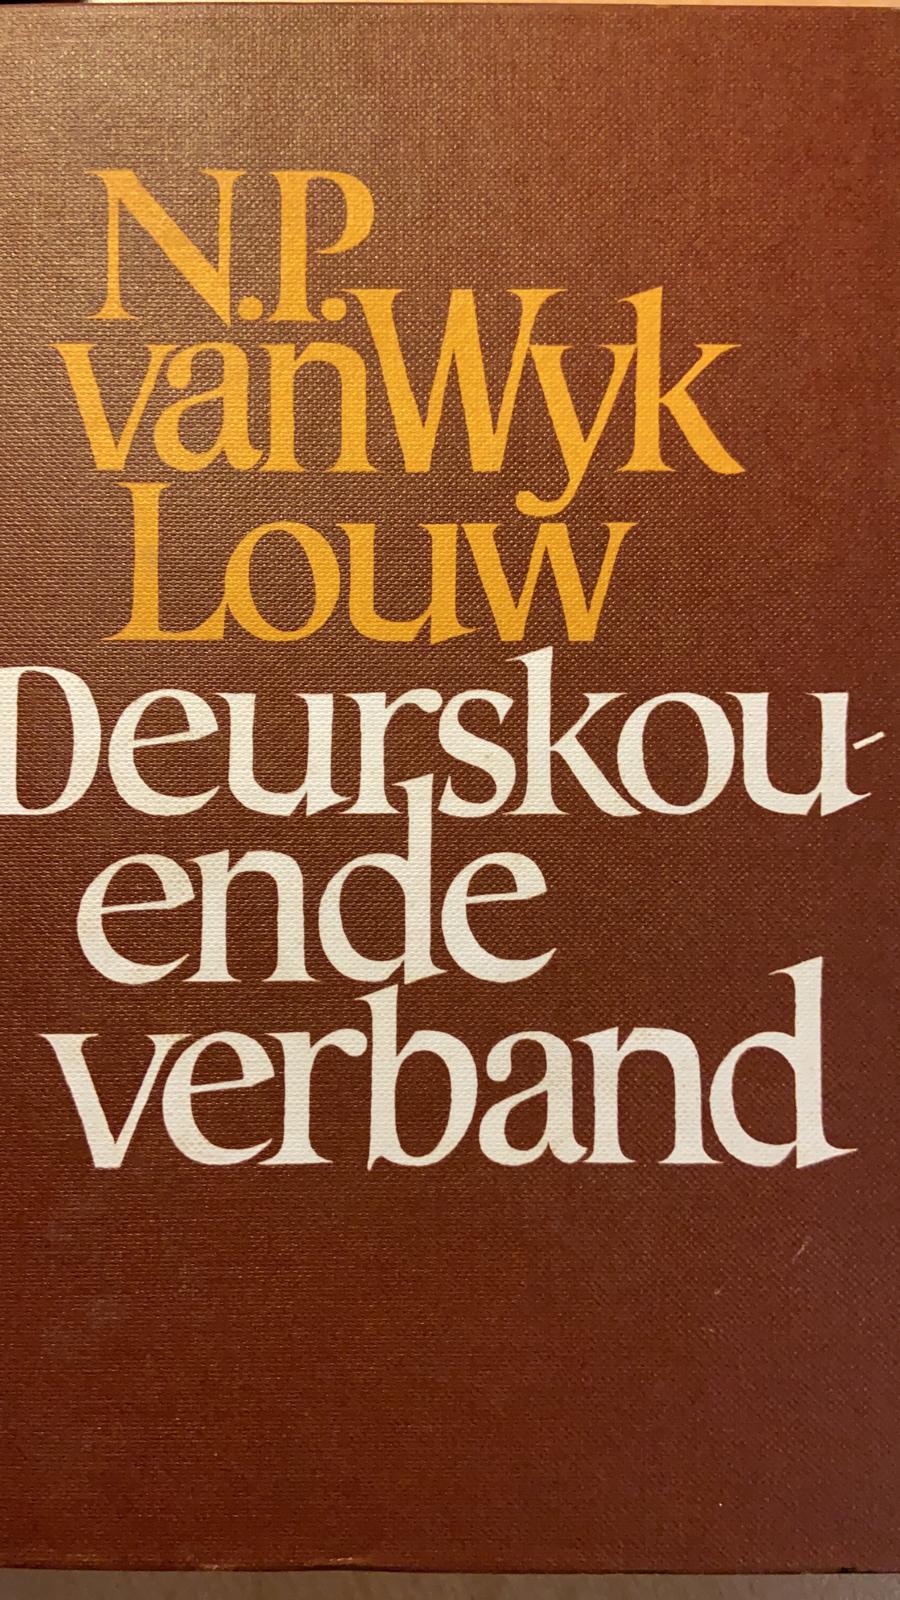 [FIRST EDITION] Deurskouende verband by N.P. van Wyk Louw, Human & Rousseau, Kaapstad en Pretoria, 1977, 146 pp.